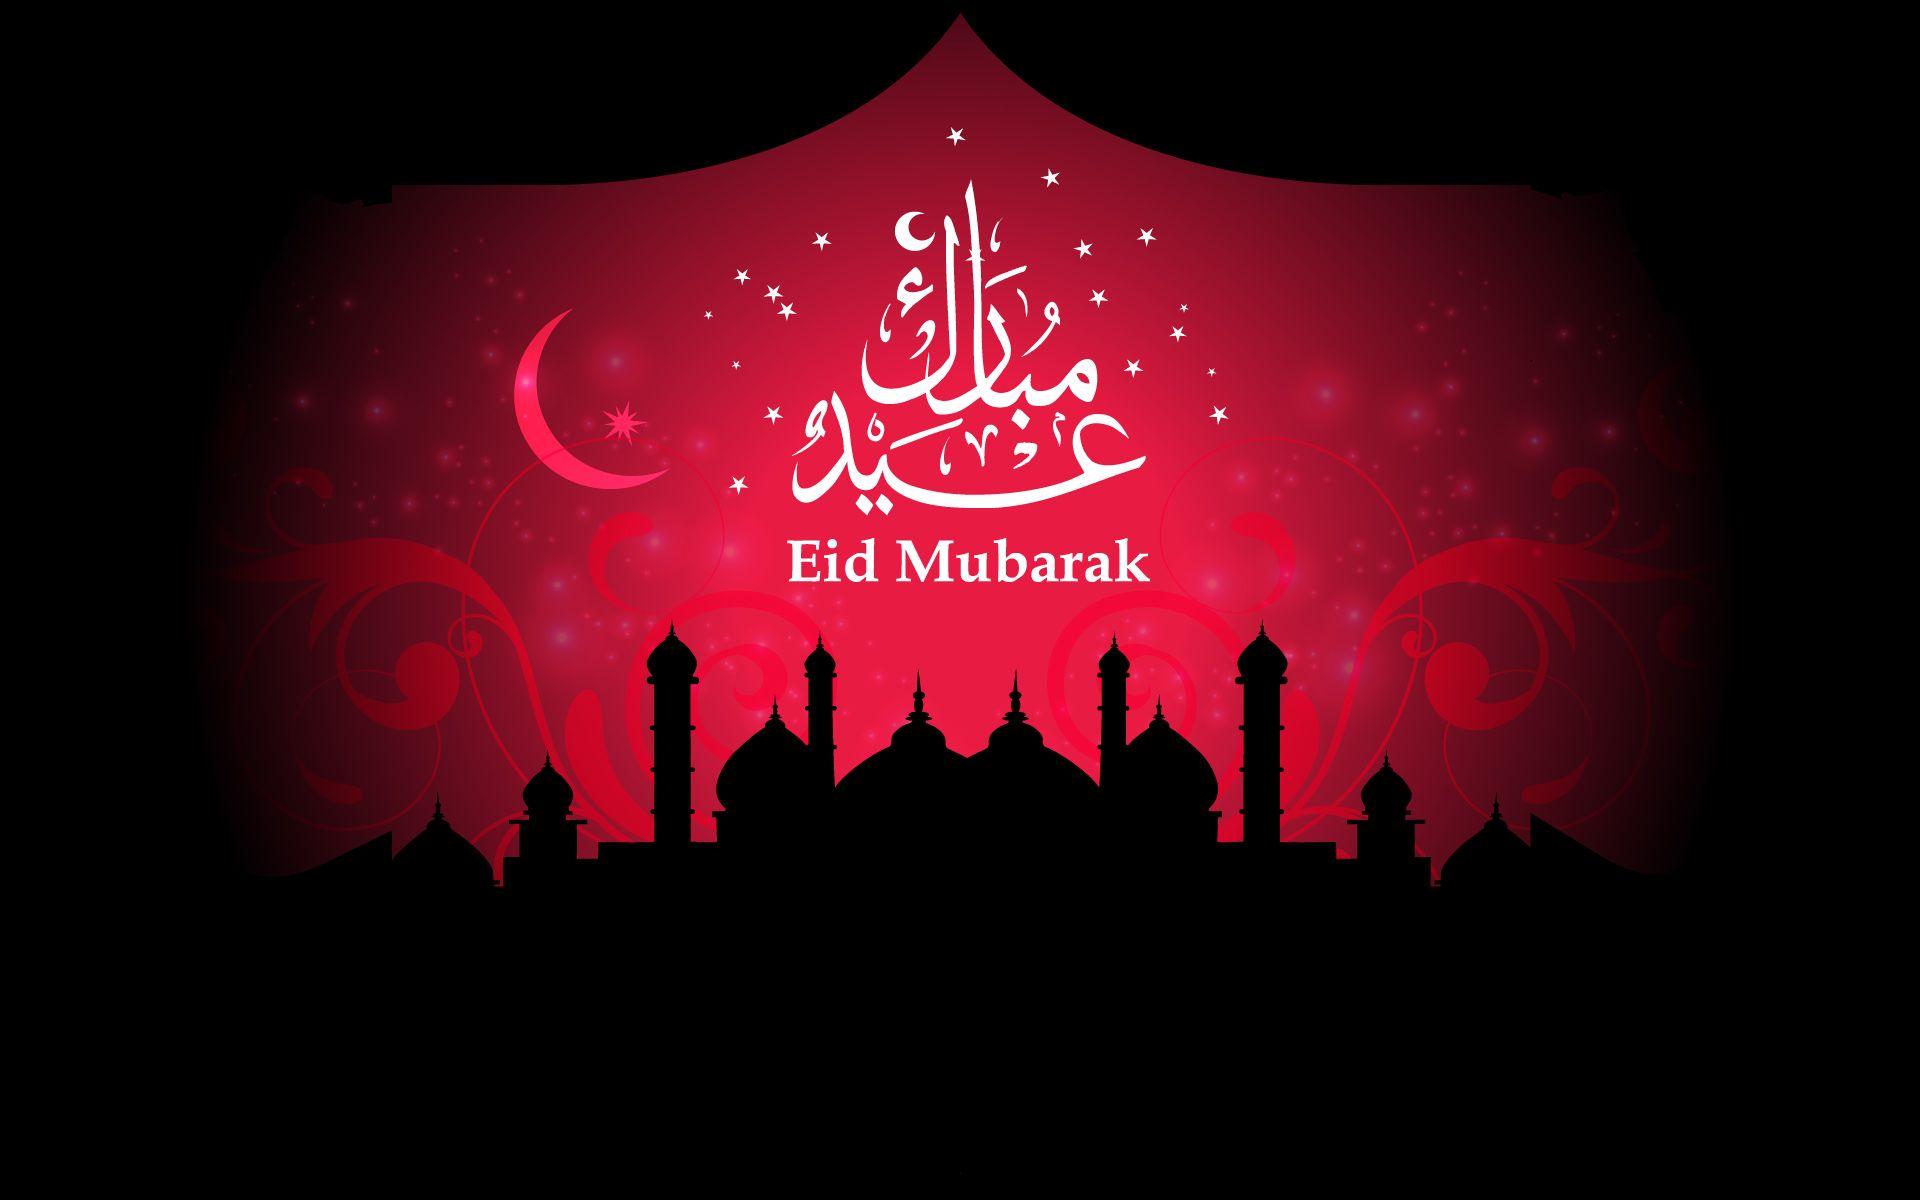 Eid Ramadan Mubarak 2017 HD Wallpaper Image Cover